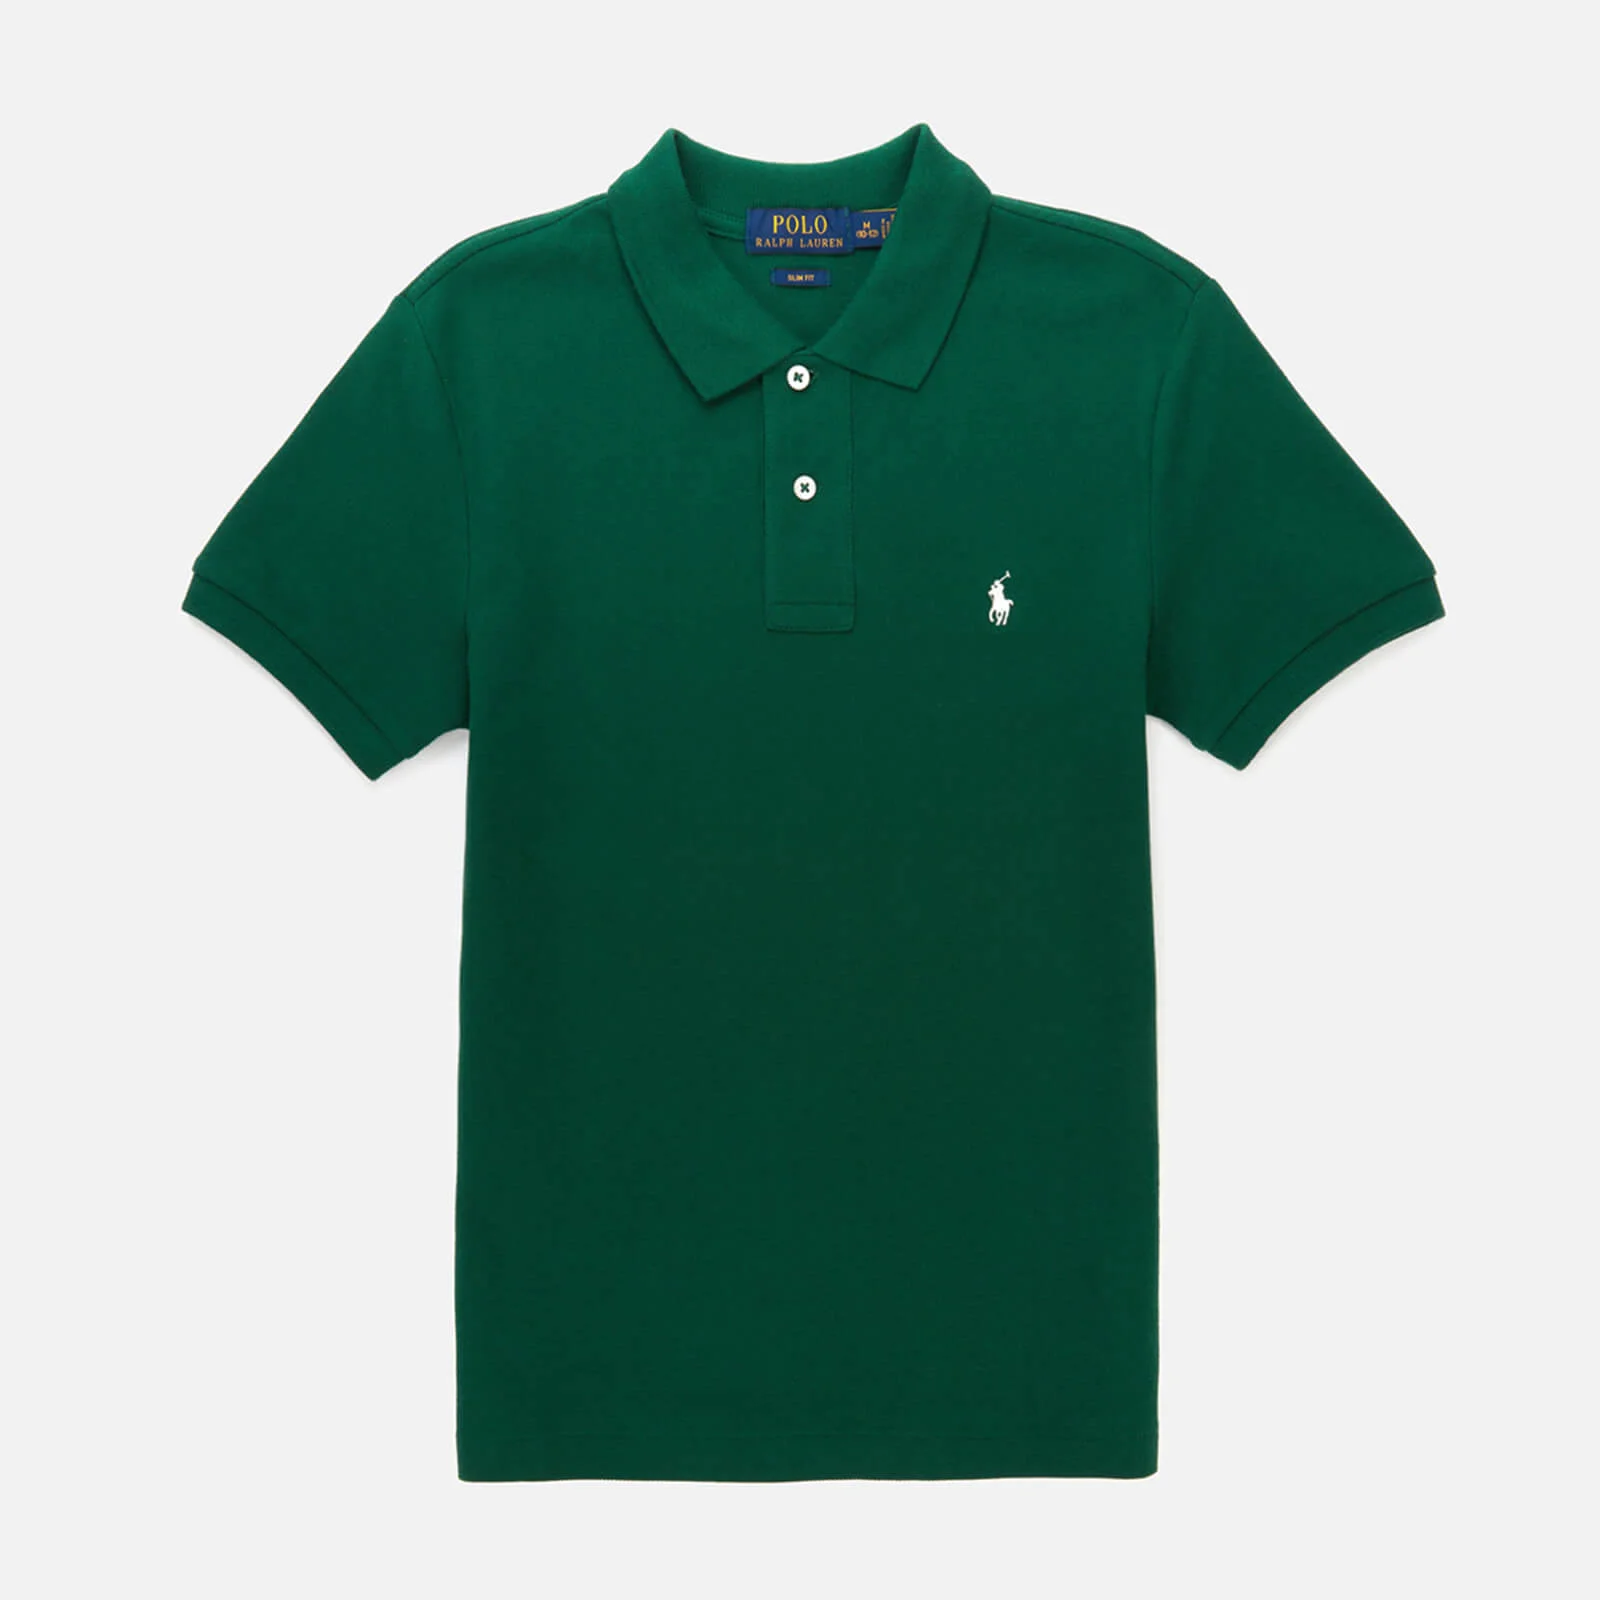 Polo Ralph Lauren Boys' Polo-Shirt - Green Image 1